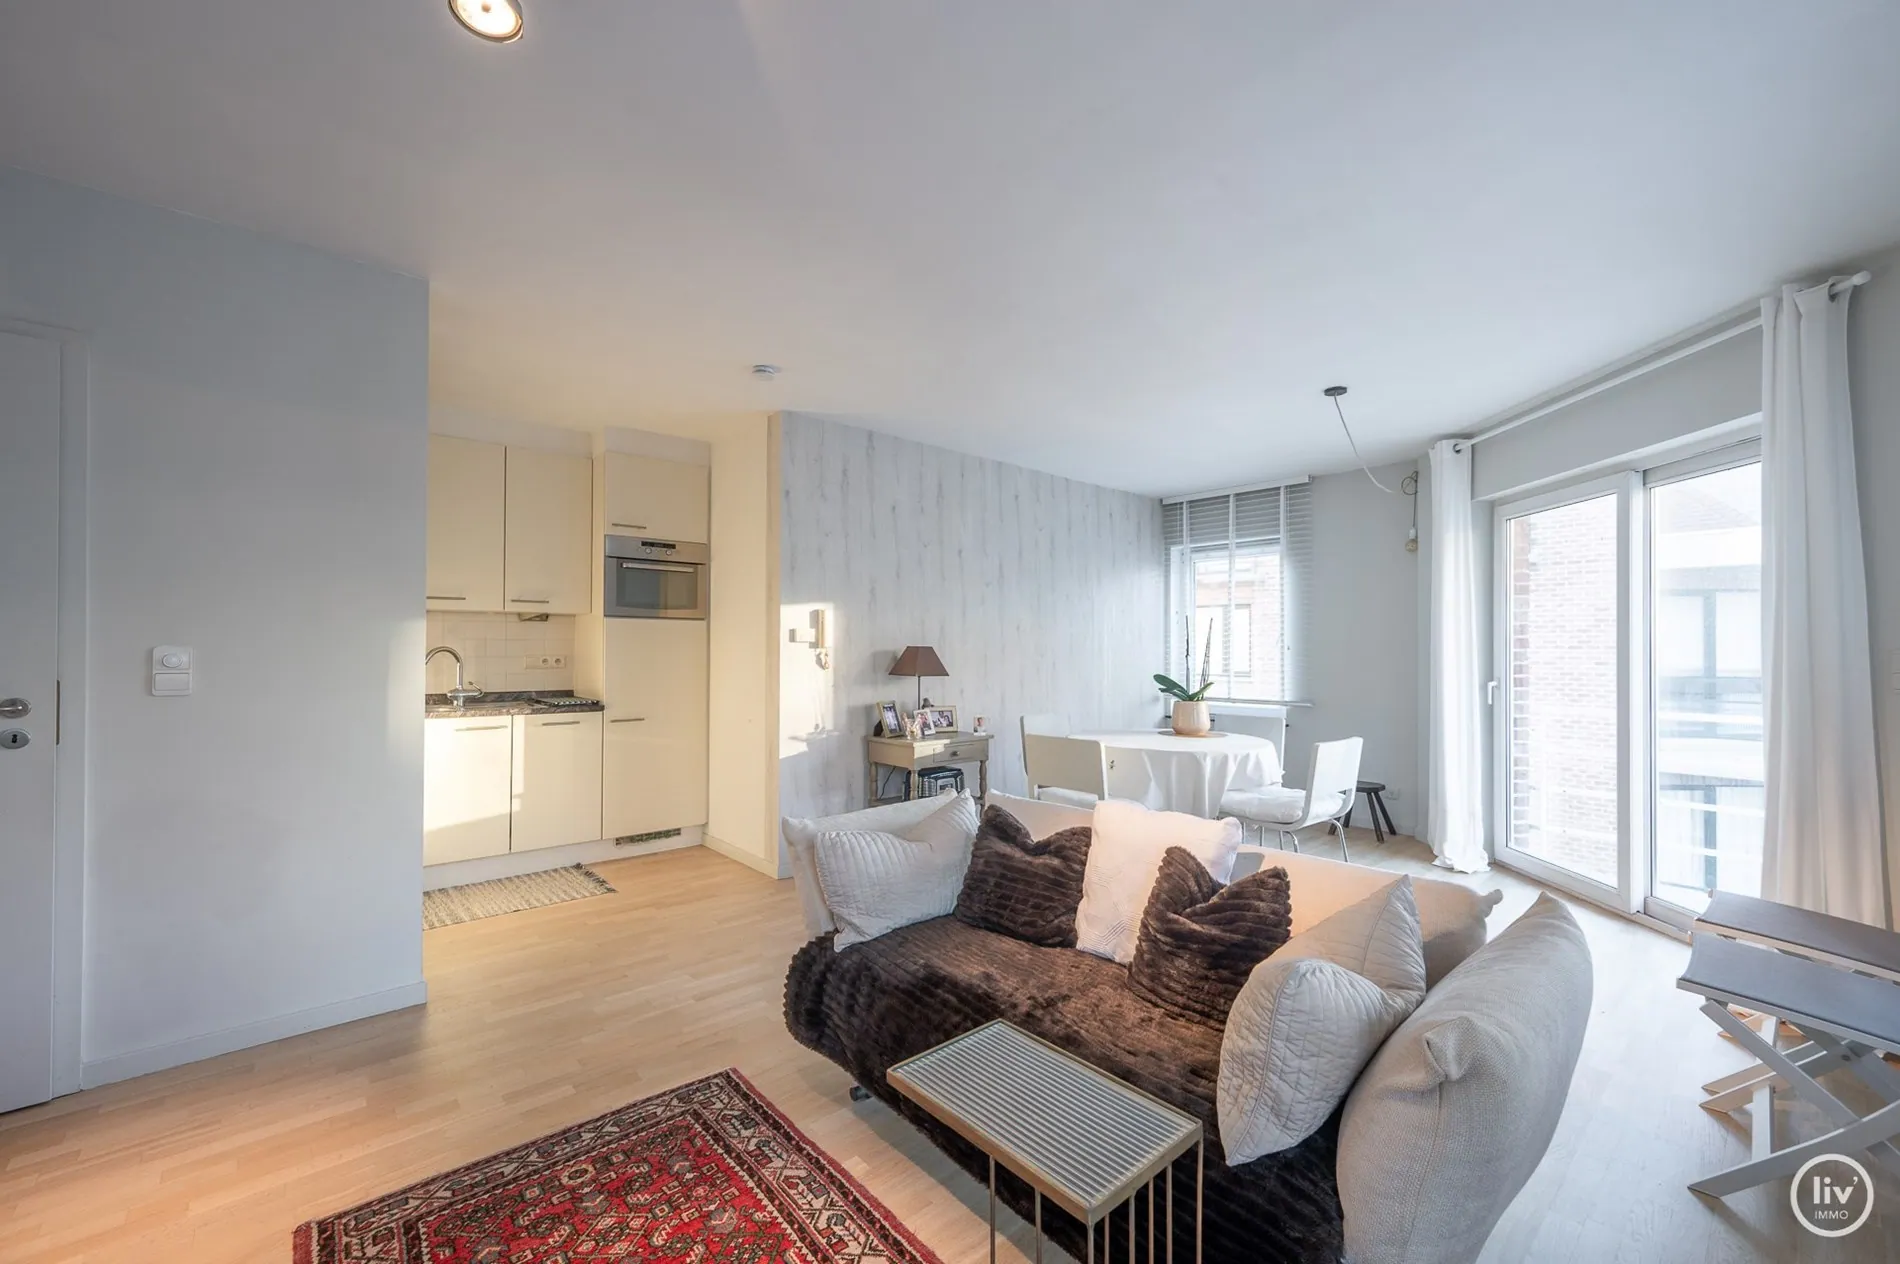 Appartement chaleureux d'angle avec 1 chambre situé au centre de l'avenue Paul Parmentier à Knokke.